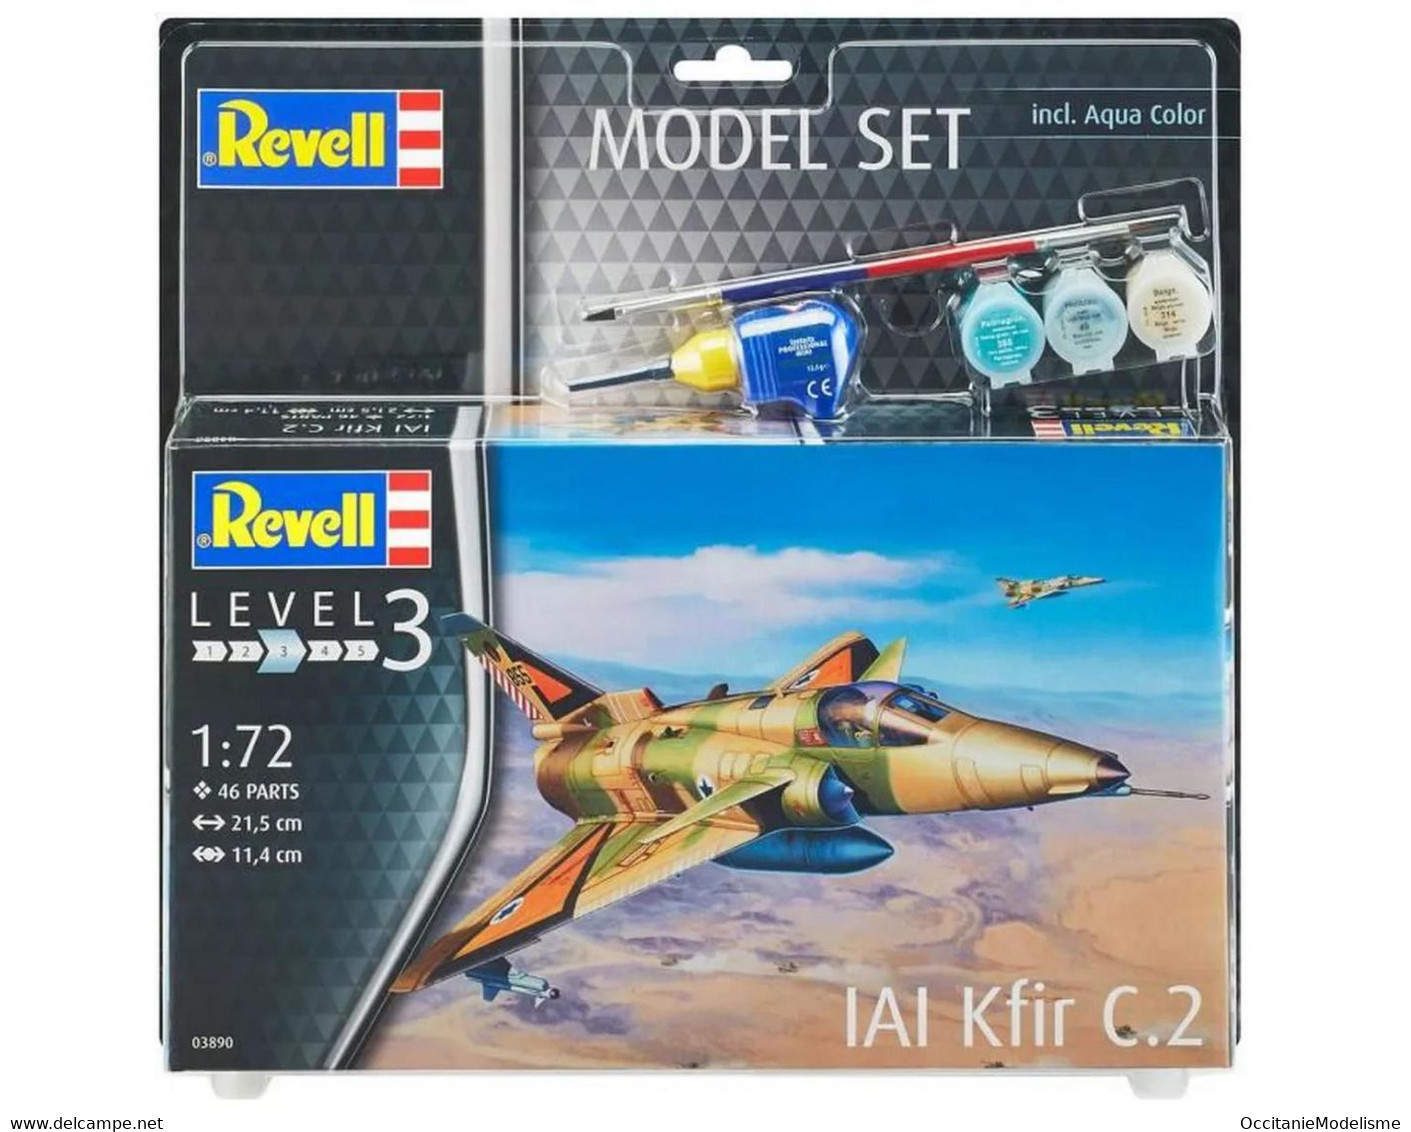 Revell - SET IAI Kfir C.2 + Peintures + Colle Maquette Kit Plastique Réf. 63890 Neuf NBO 1/72 - Avions